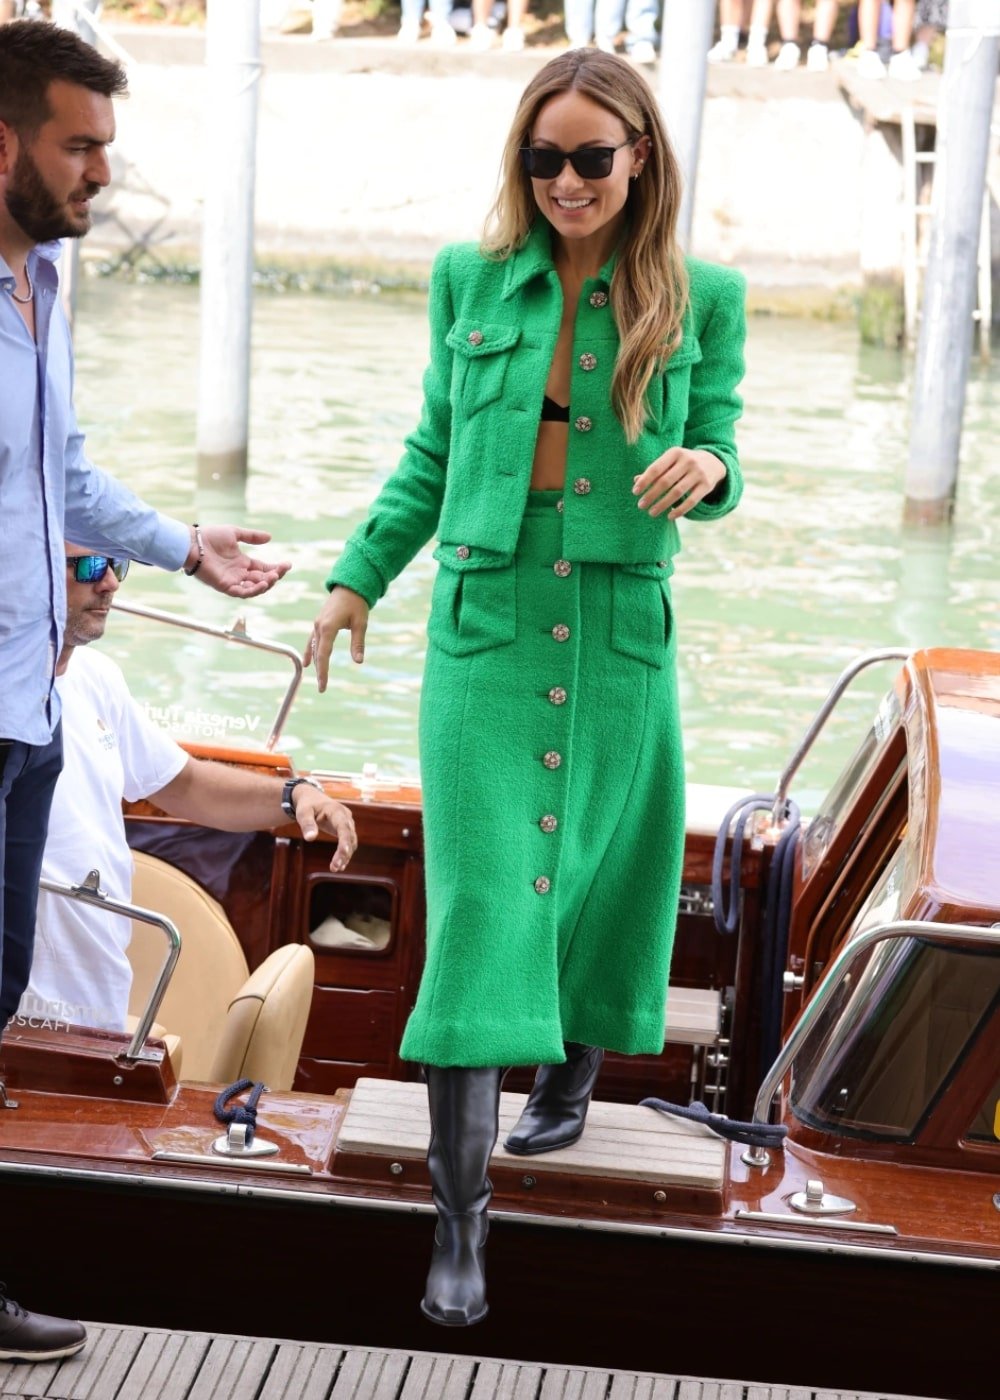 Olivia Wilde - conjunto verde de saia midi e casaco - Olivia Wilde - Outono - em pé na rua usando óculos de sol - https://stealthelook.com.br